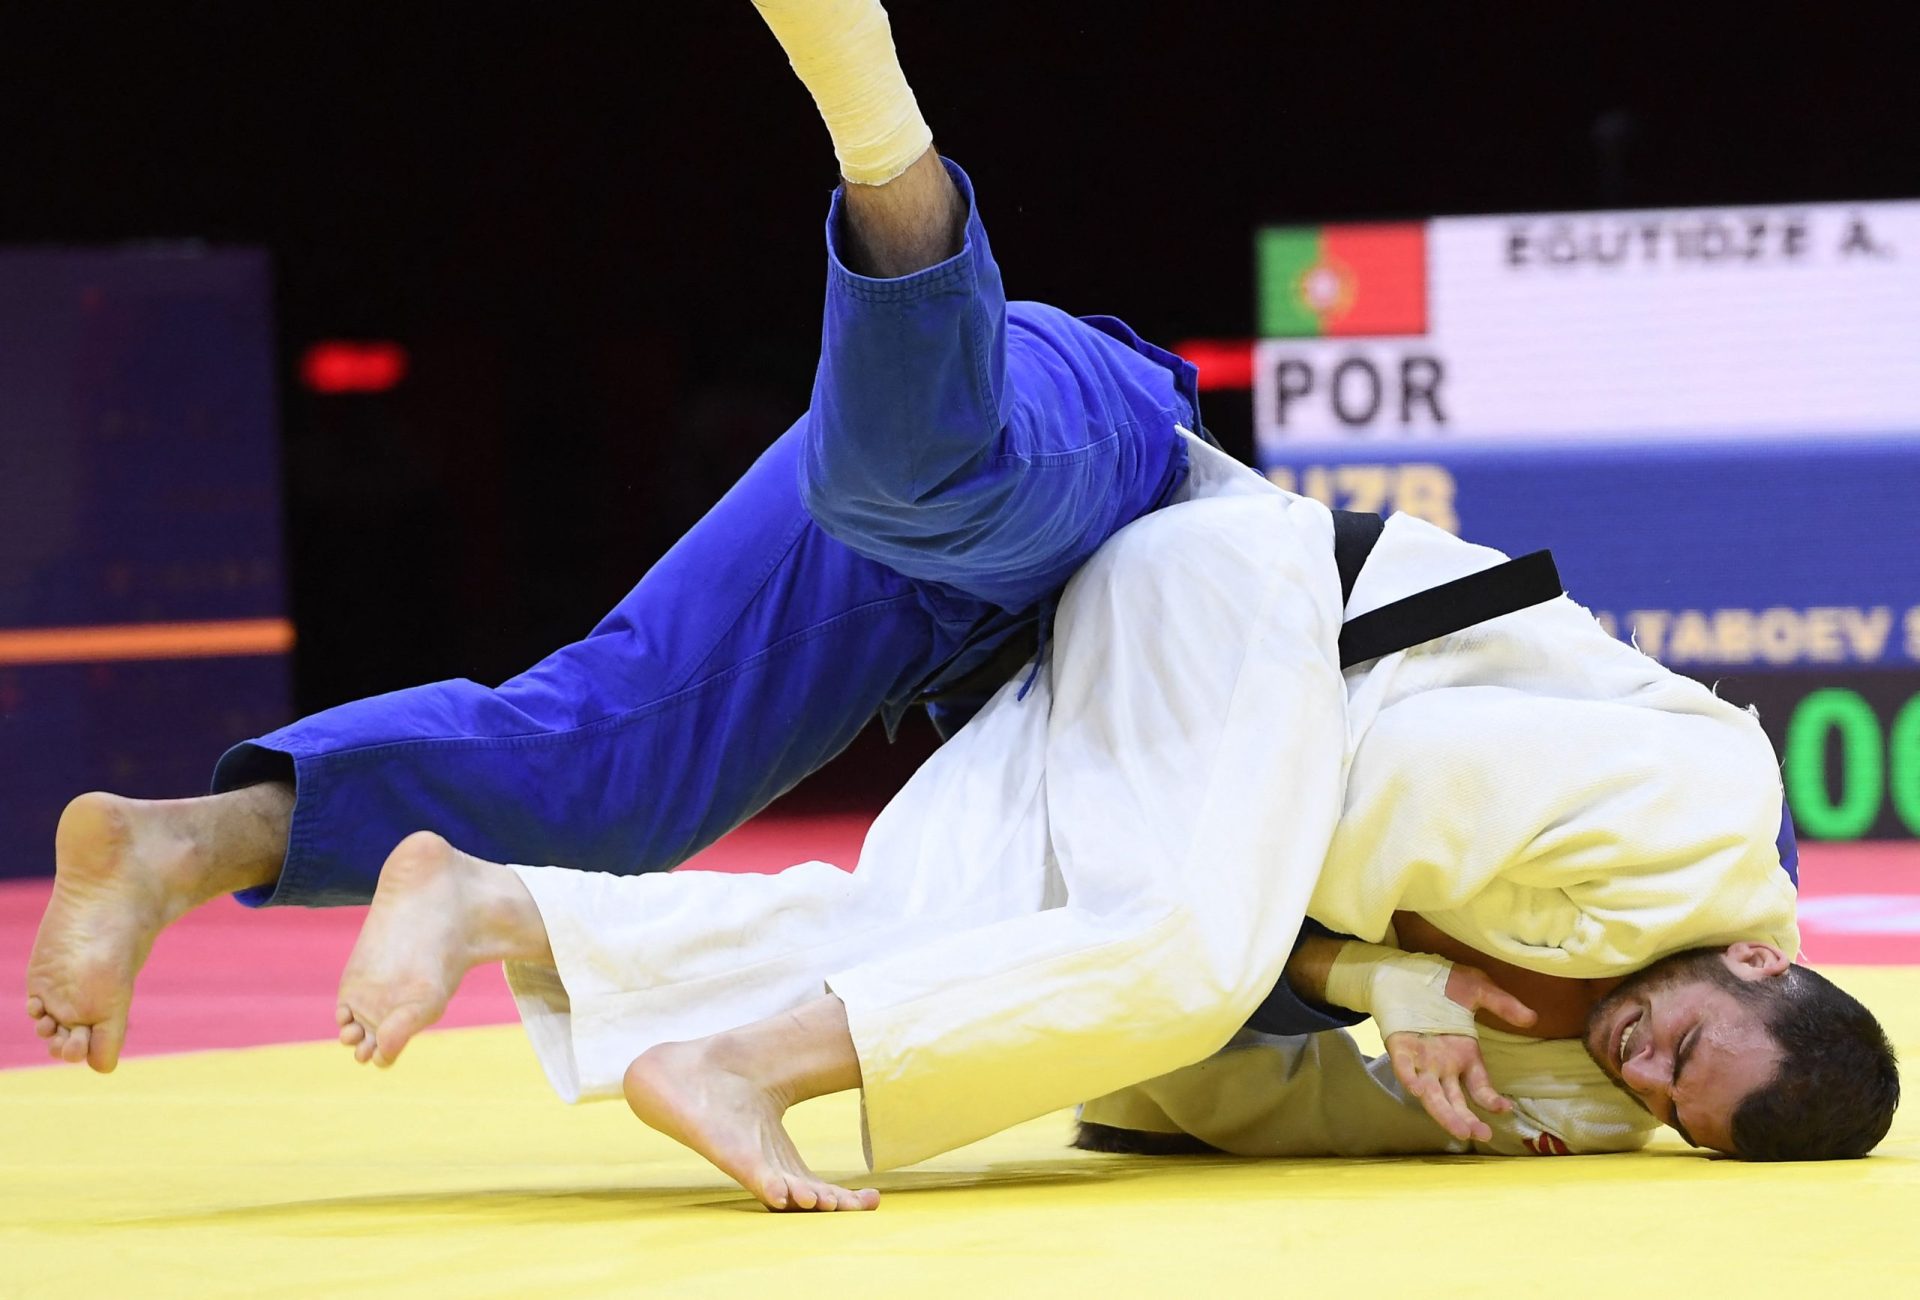 Mundiais de Judo. Português Anri Egutidze conquista medalha de bronze na categoria -81 kg